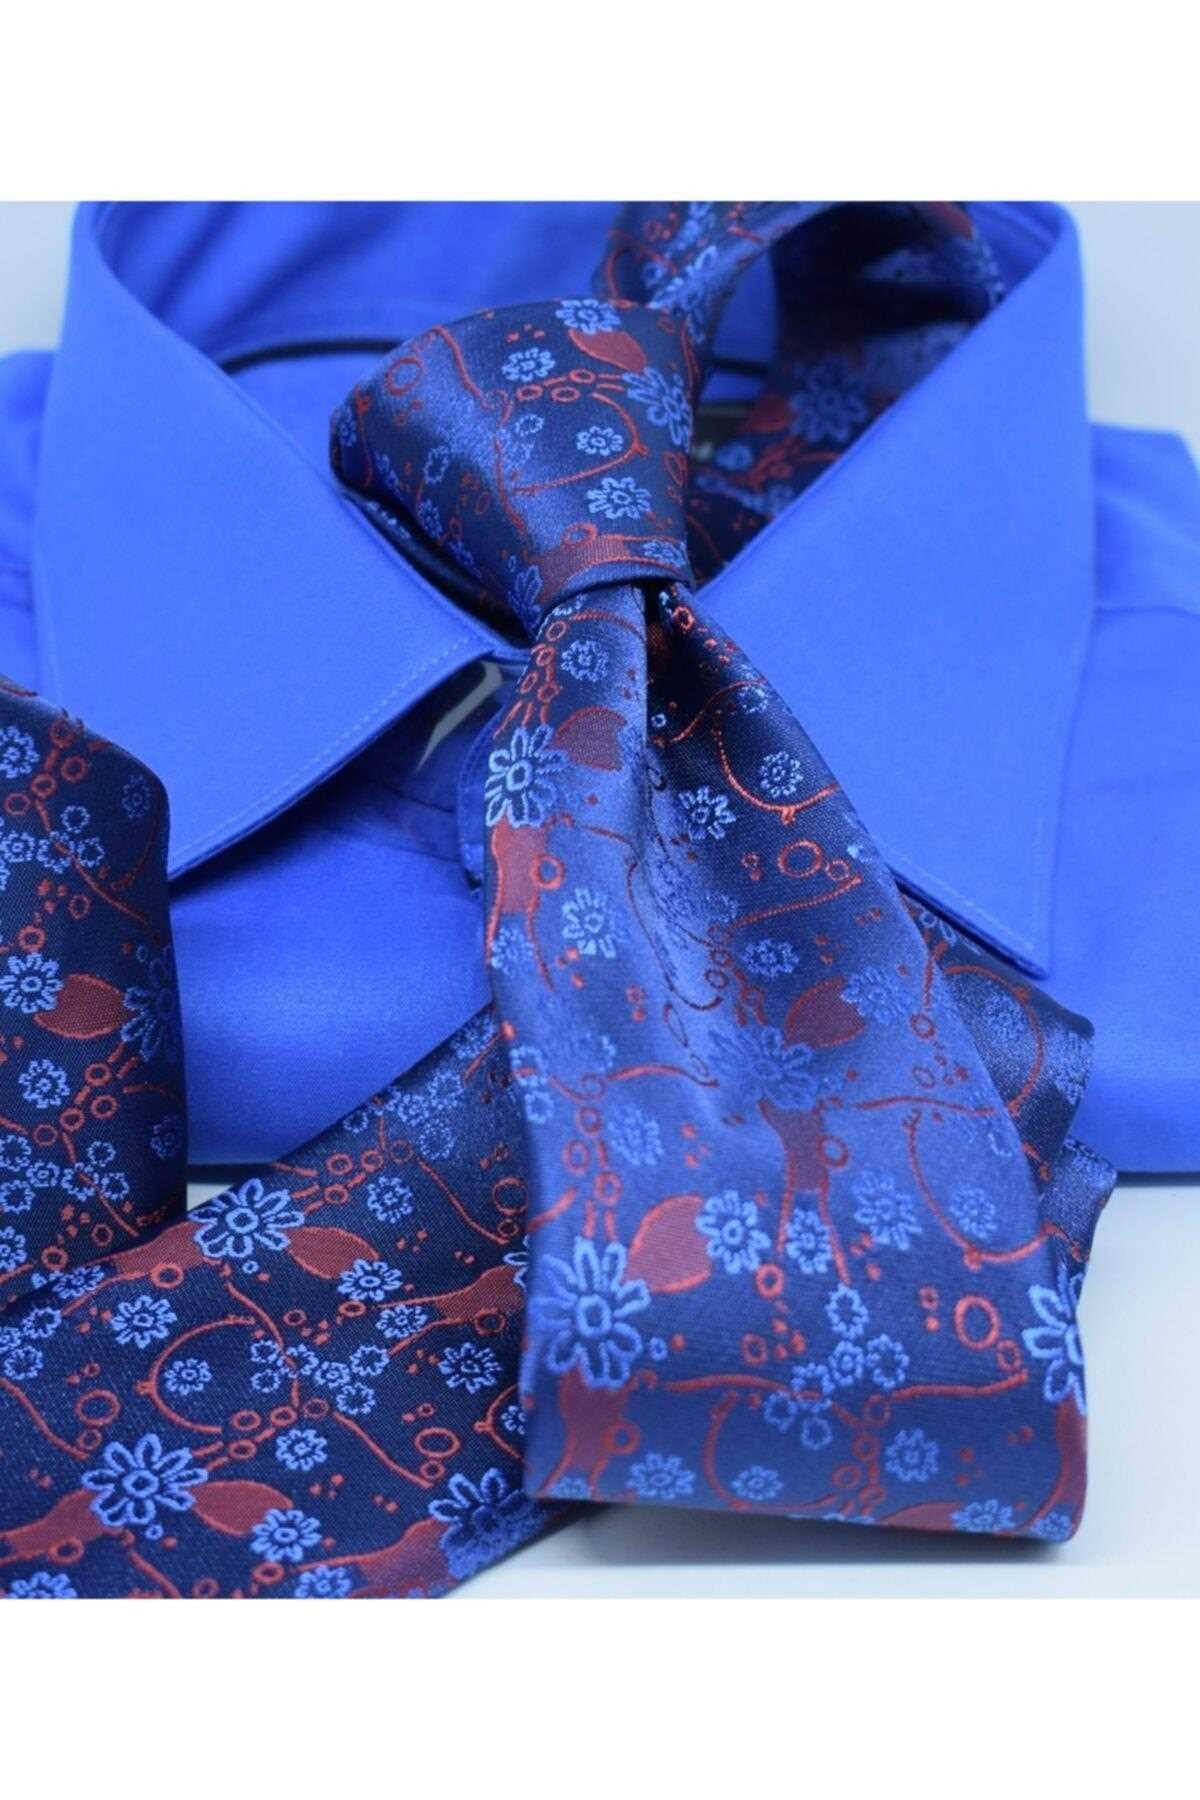 فروشگاه کراوات تابستانی شیک Blazzotti رنگ لاجوردی کد VE رنگ زرشکی ty104547369